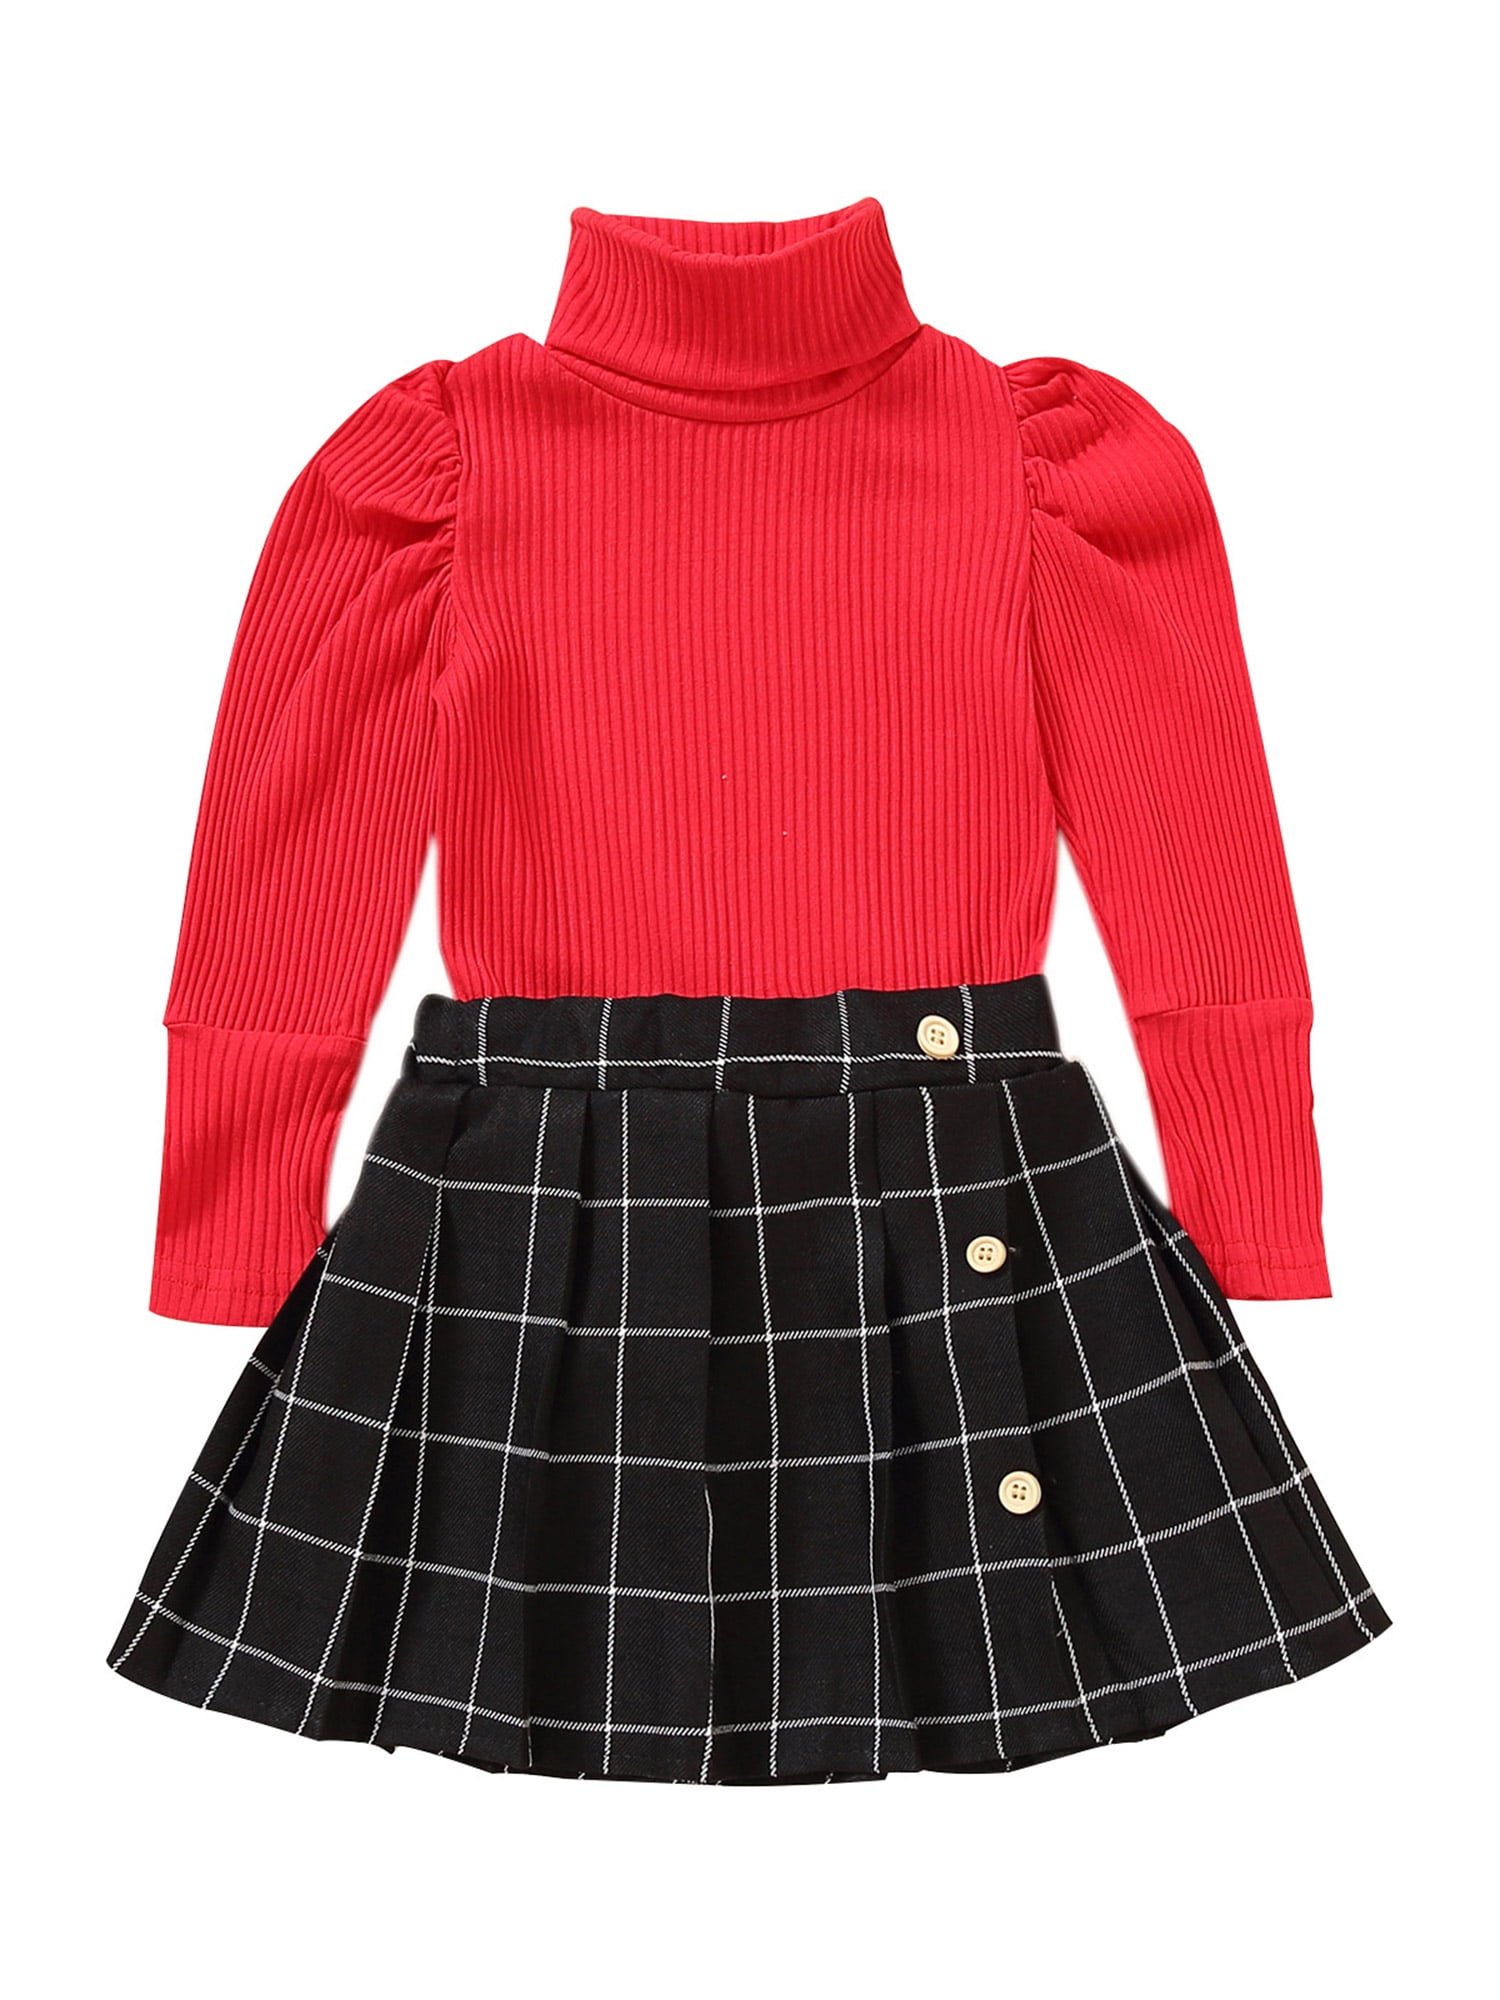 Plaid Skirt - Red/plaid - Kids